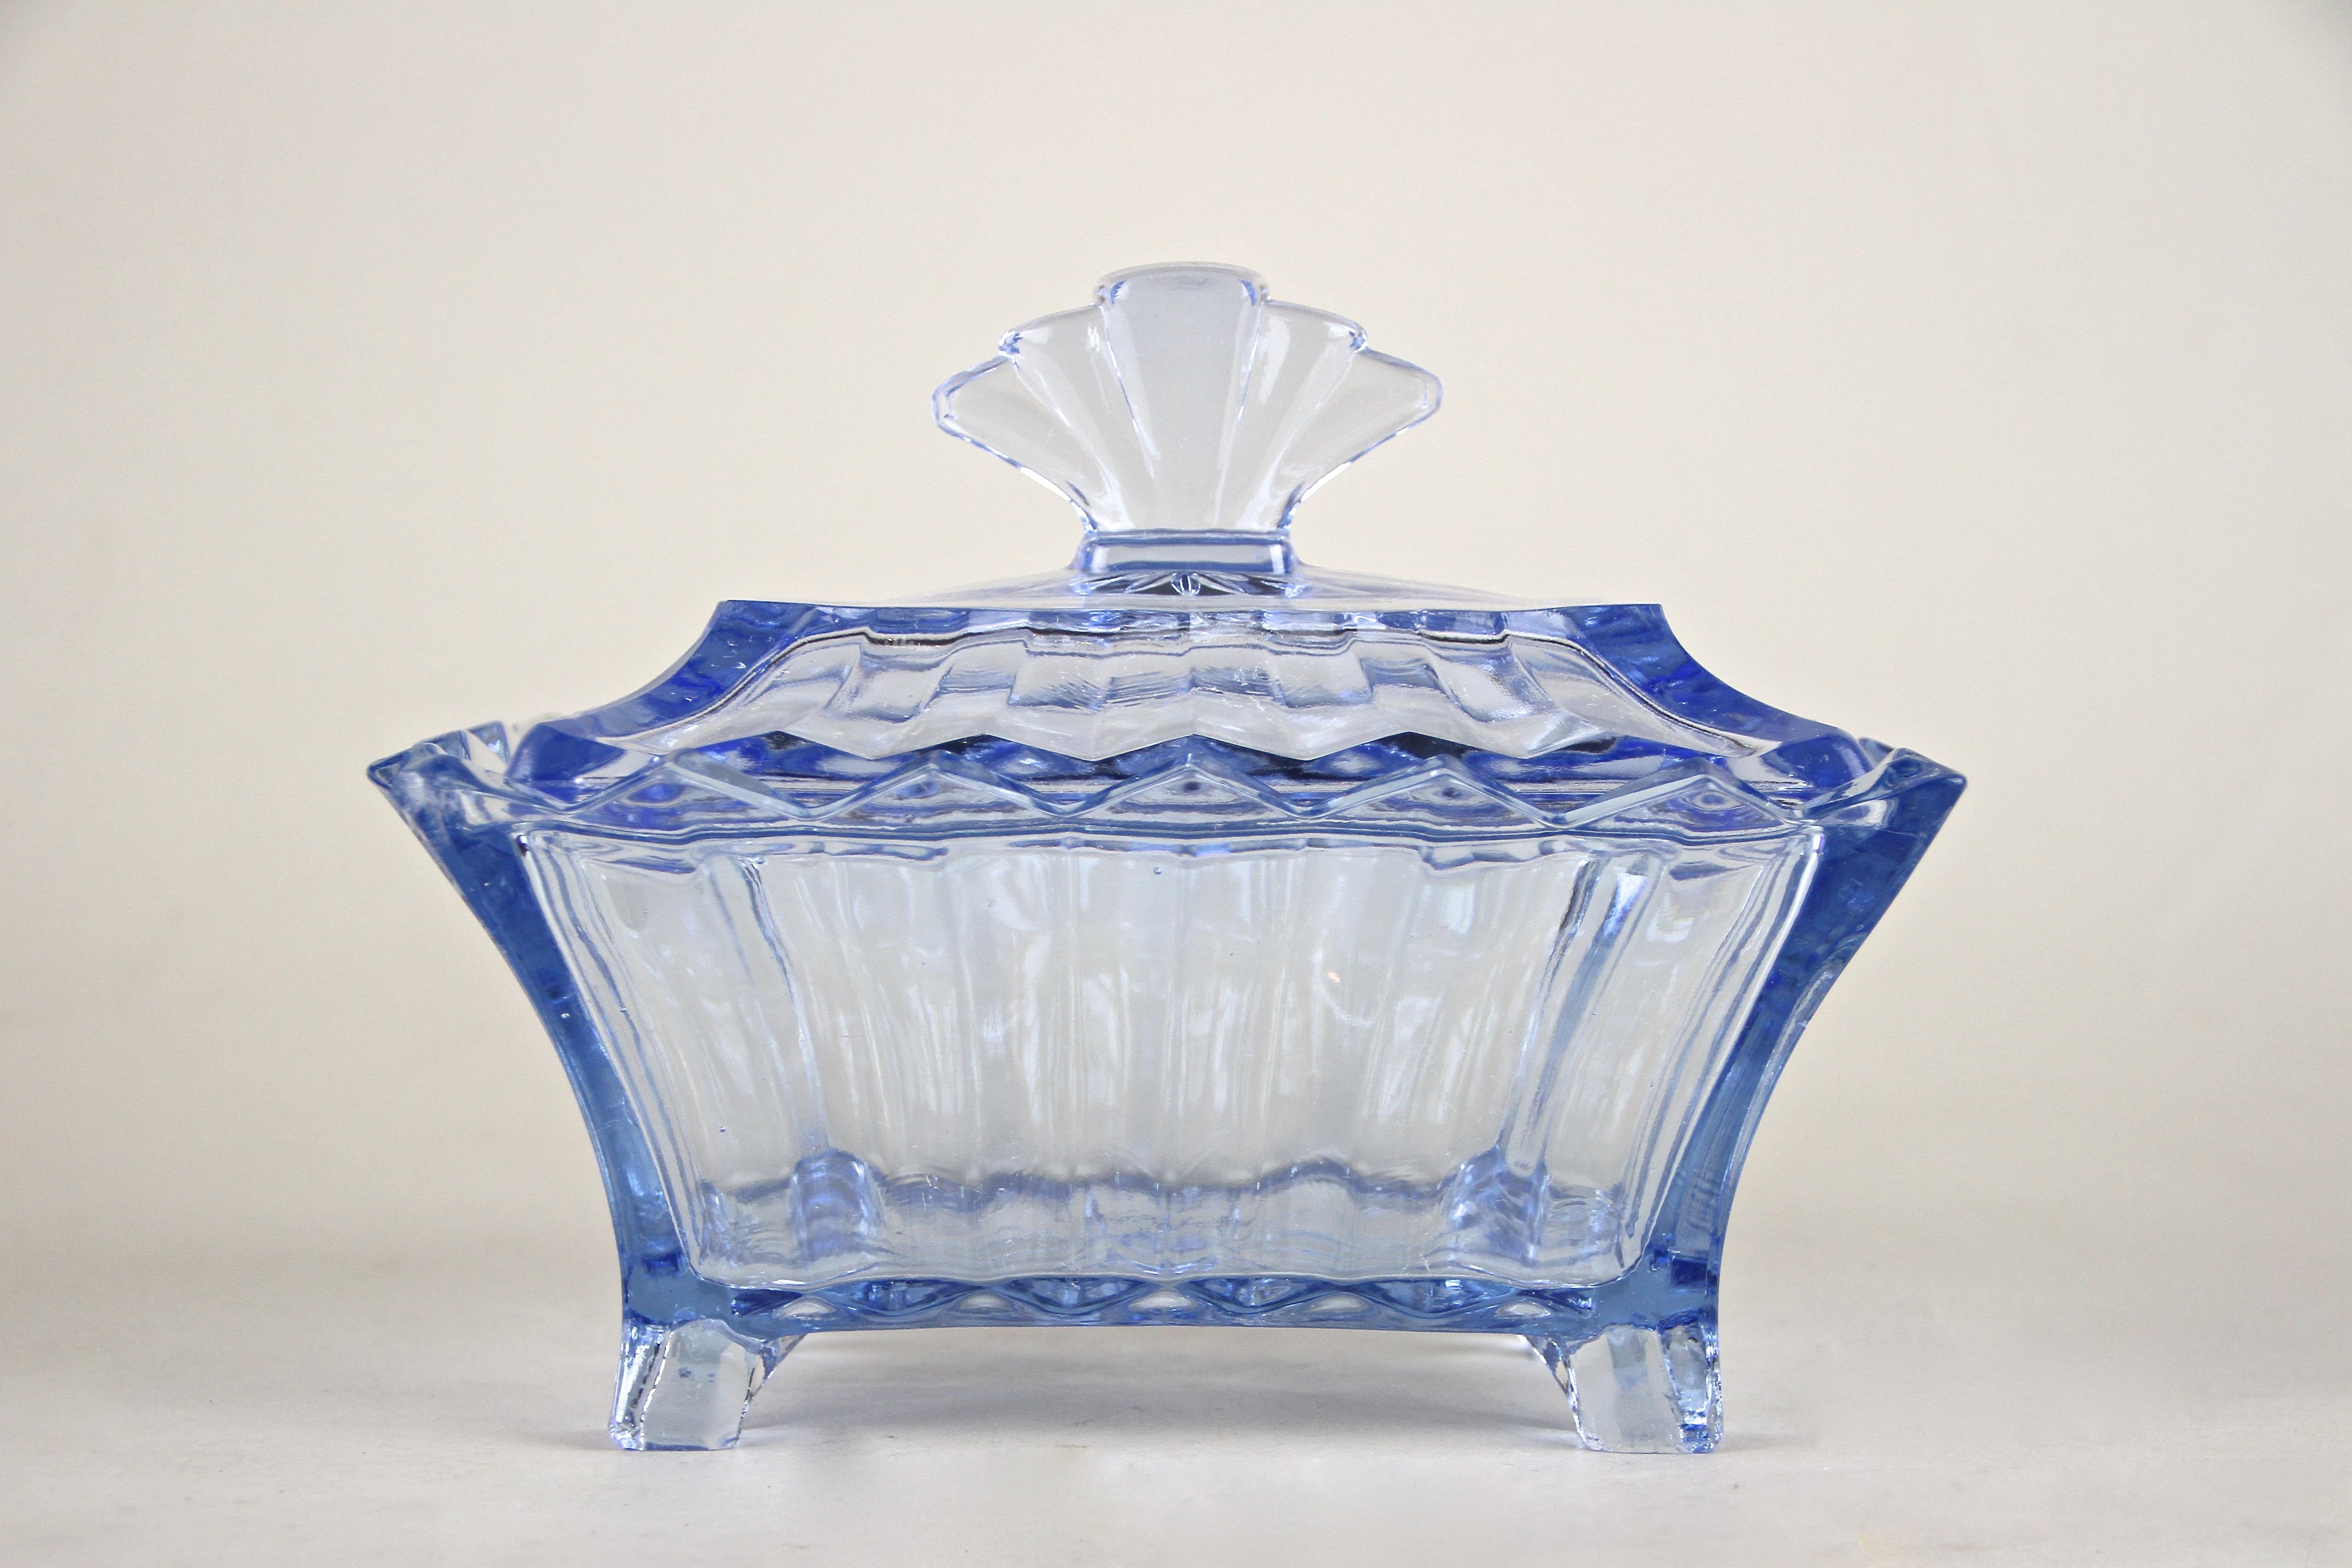 Boîte en verre Art Déco bleue exclusive avec couvercle de l'époque en Autriche vers 1920. Cette jolie boîte en verre pressé bleu, très décorative, impressionne par sa forme absolument unique, reflétant au mieux le célèbre langage des formes de l'Art